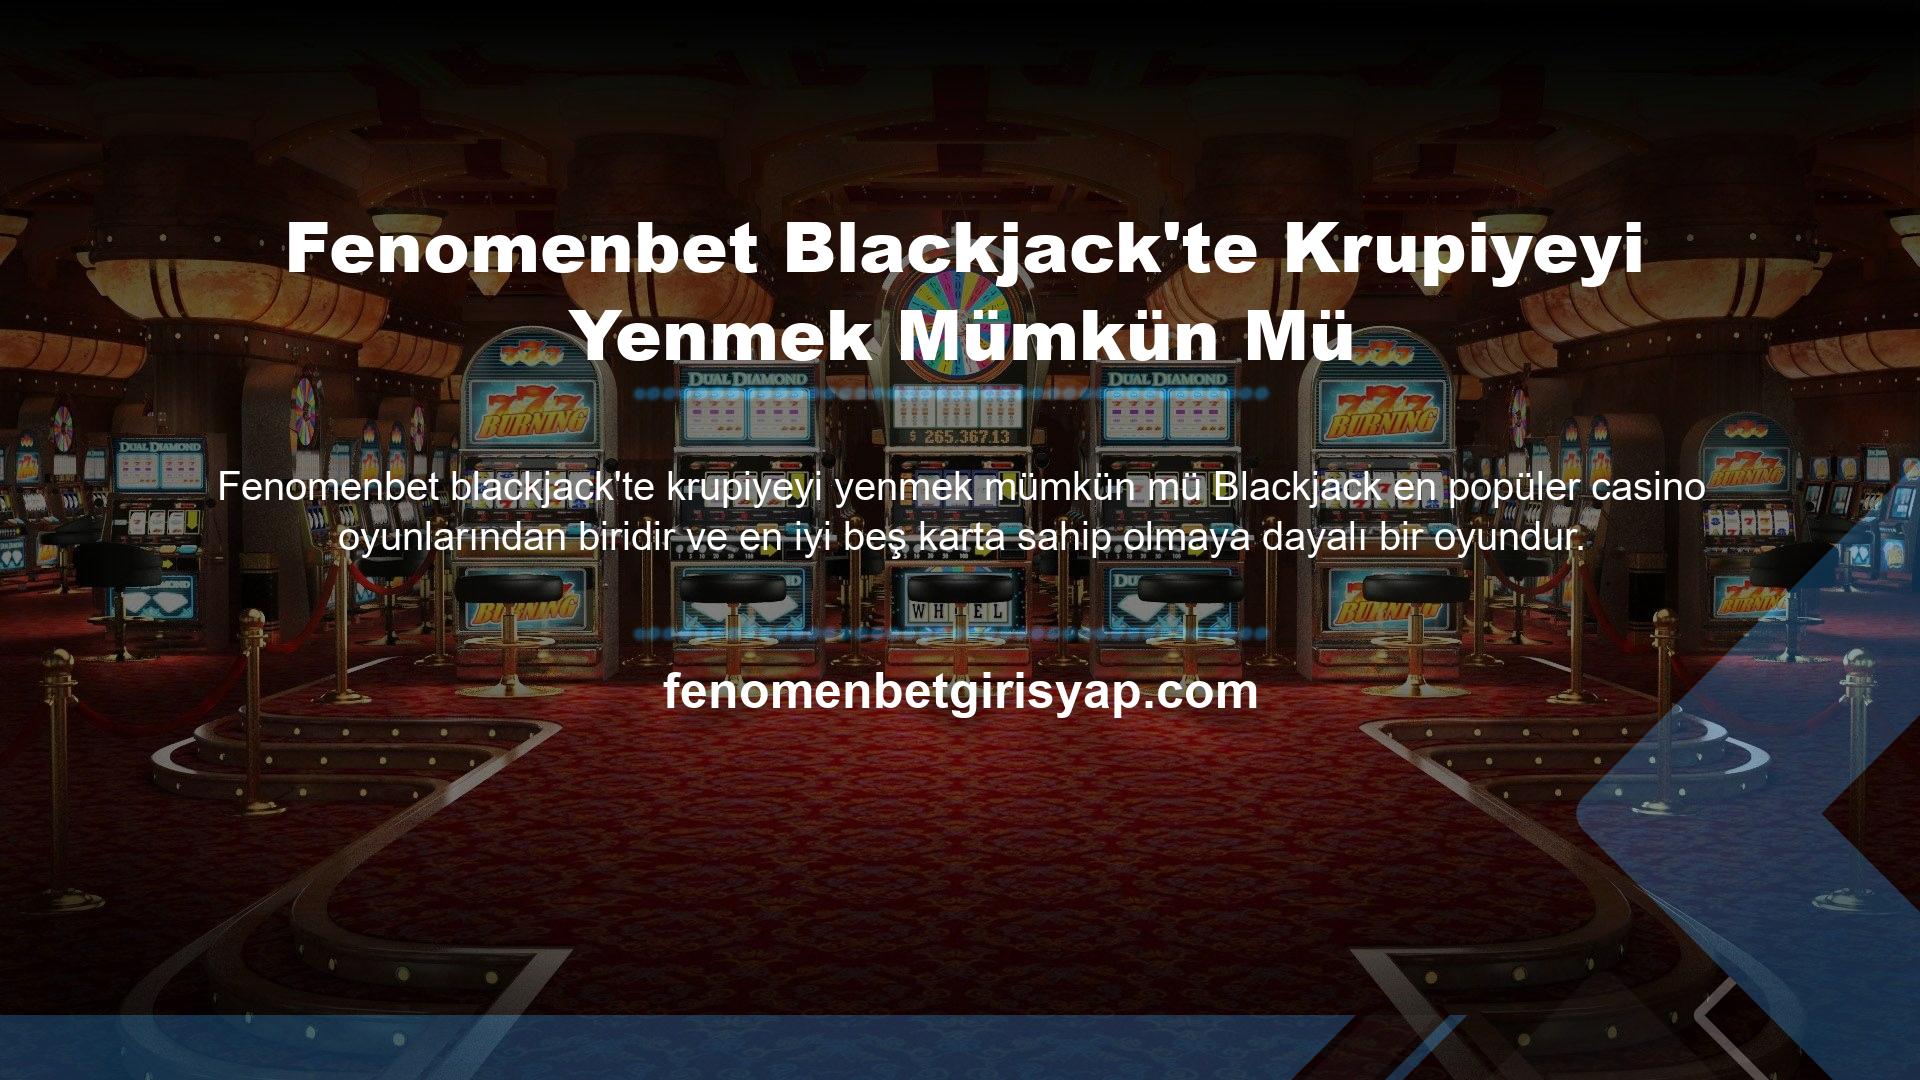 Bir blackjack oyununda krupiyeyi yenmenin mümkün olup olmadığı, çünkü web sitesindeki blackjack oyunları canlı olarak yayınlanır ve rakipleriniz ve kartlarınız anında bahse konur ve dağıtılır